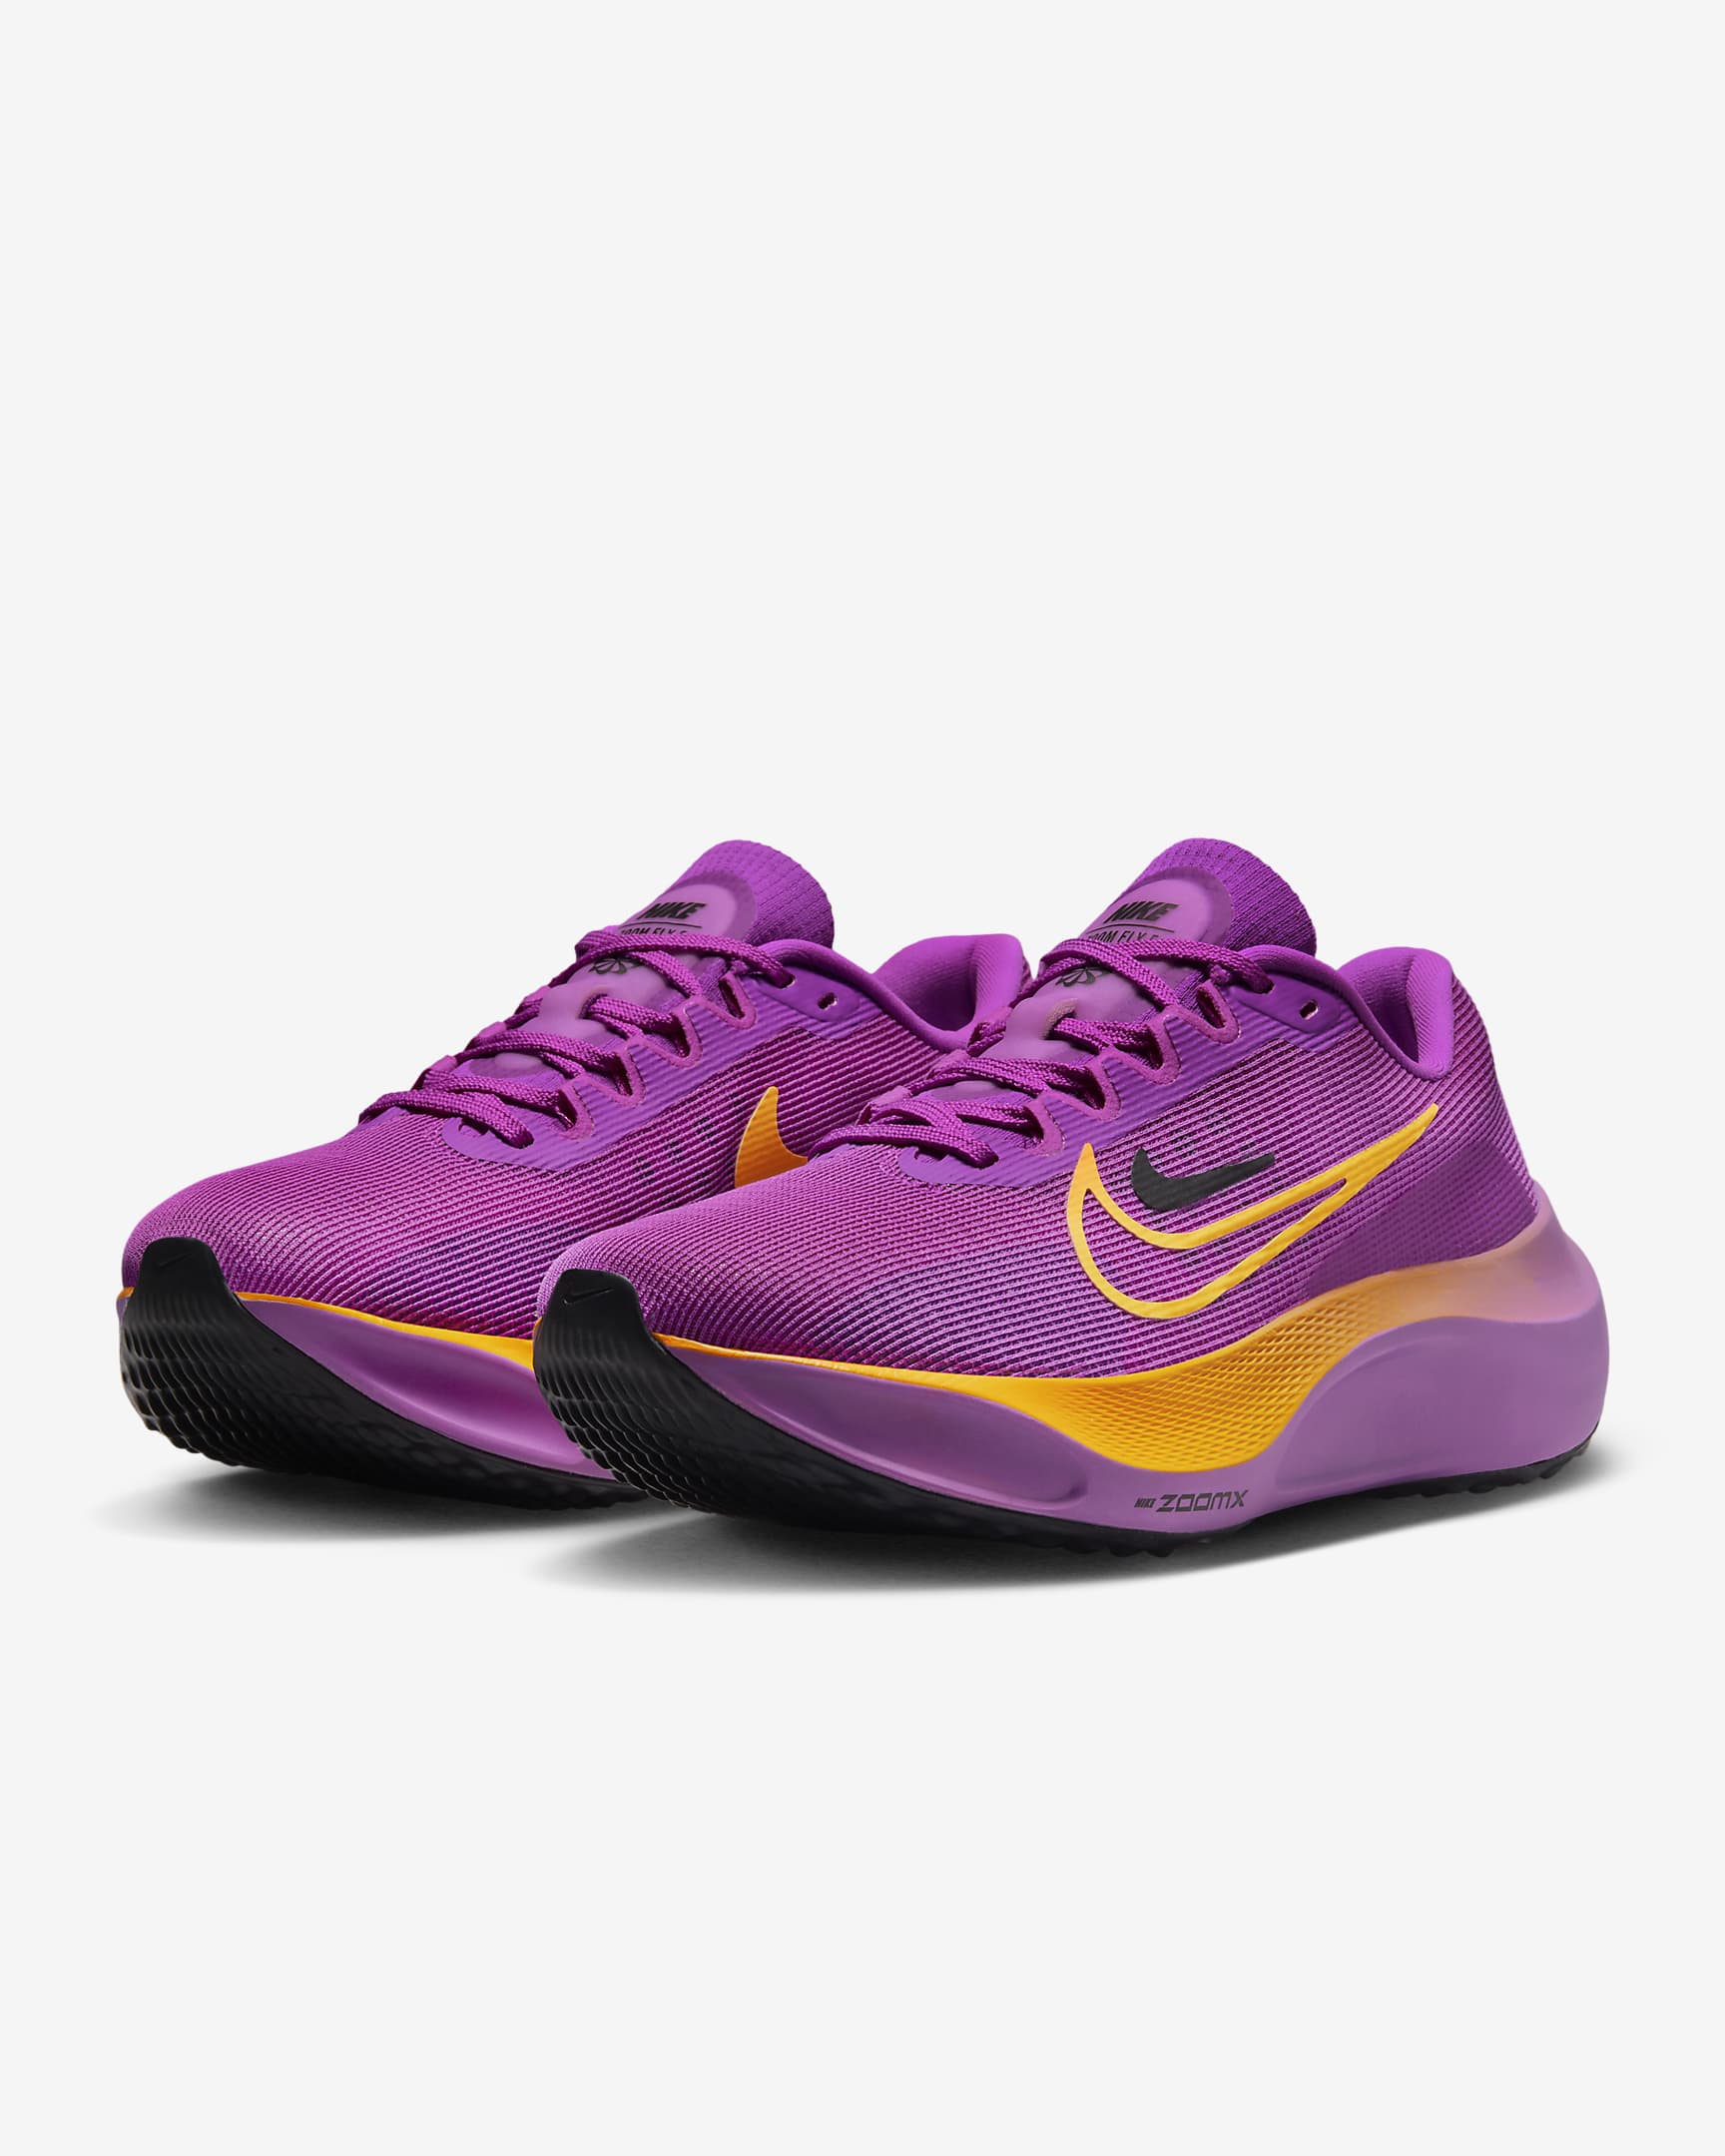 Nike Zoom Fly 5 Women's Road Running Shoes - Hyper Violet/Black/Laser Orange